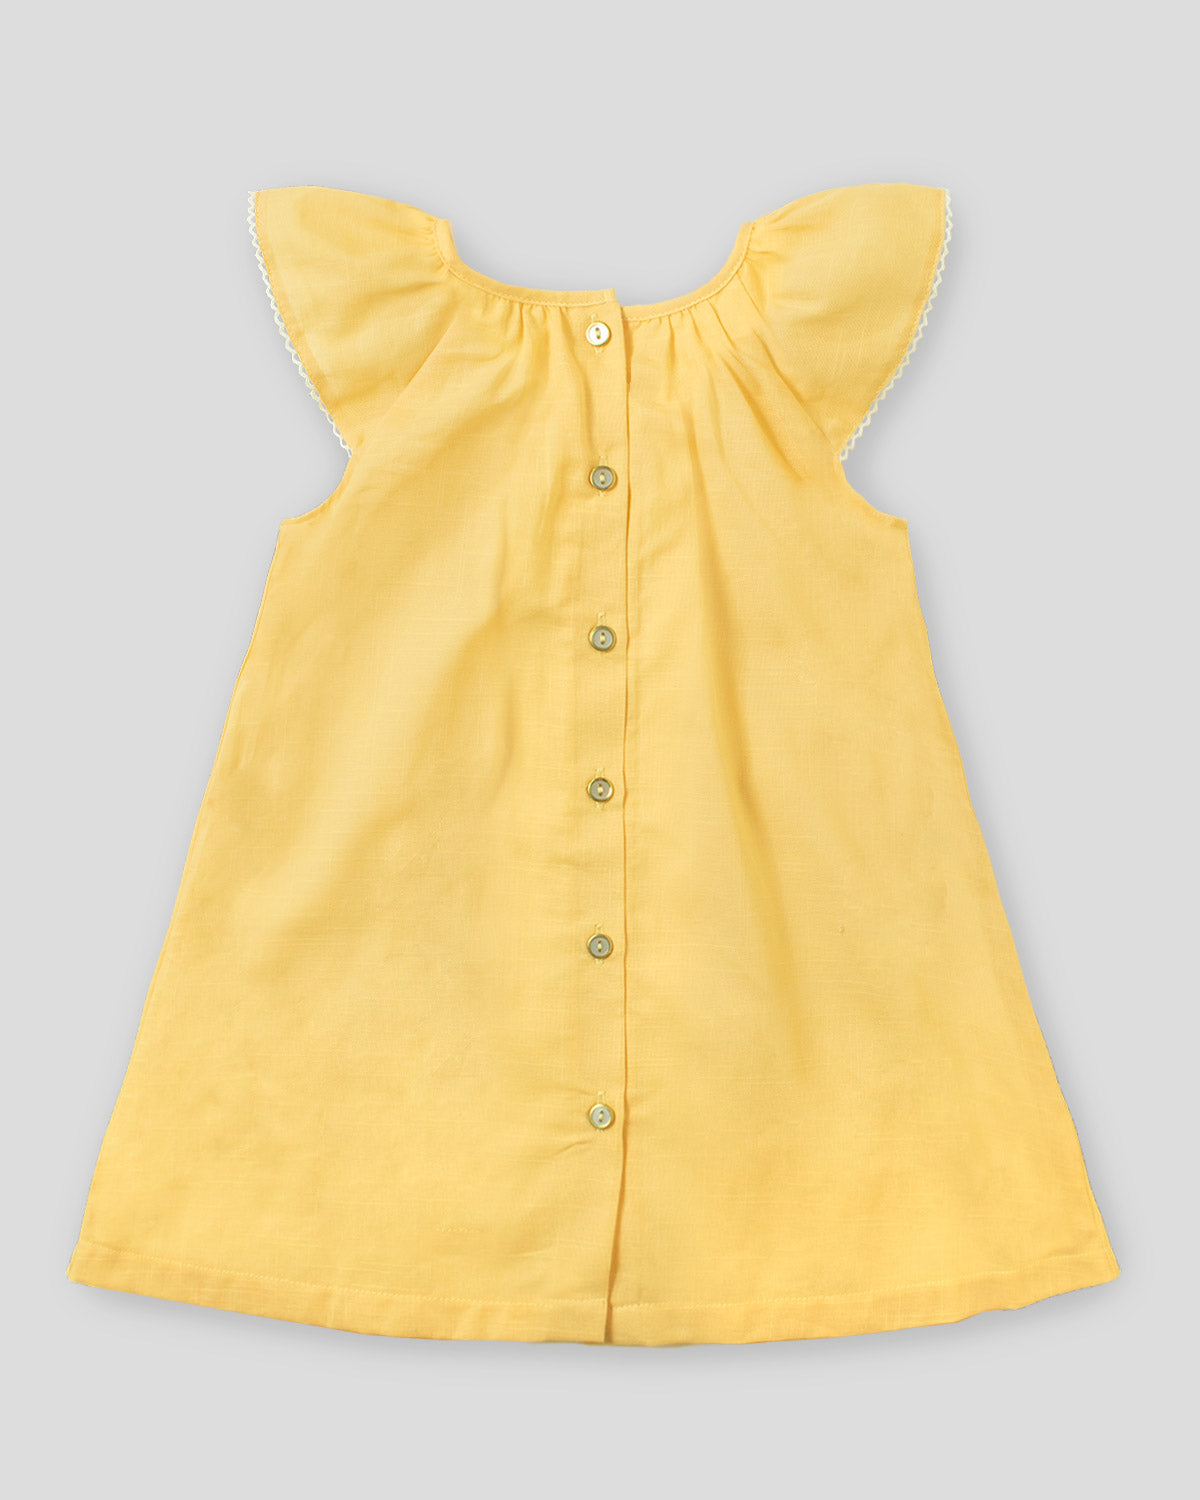 Vestido amarillo don bordado de flores  y botonadura en espalda para niña